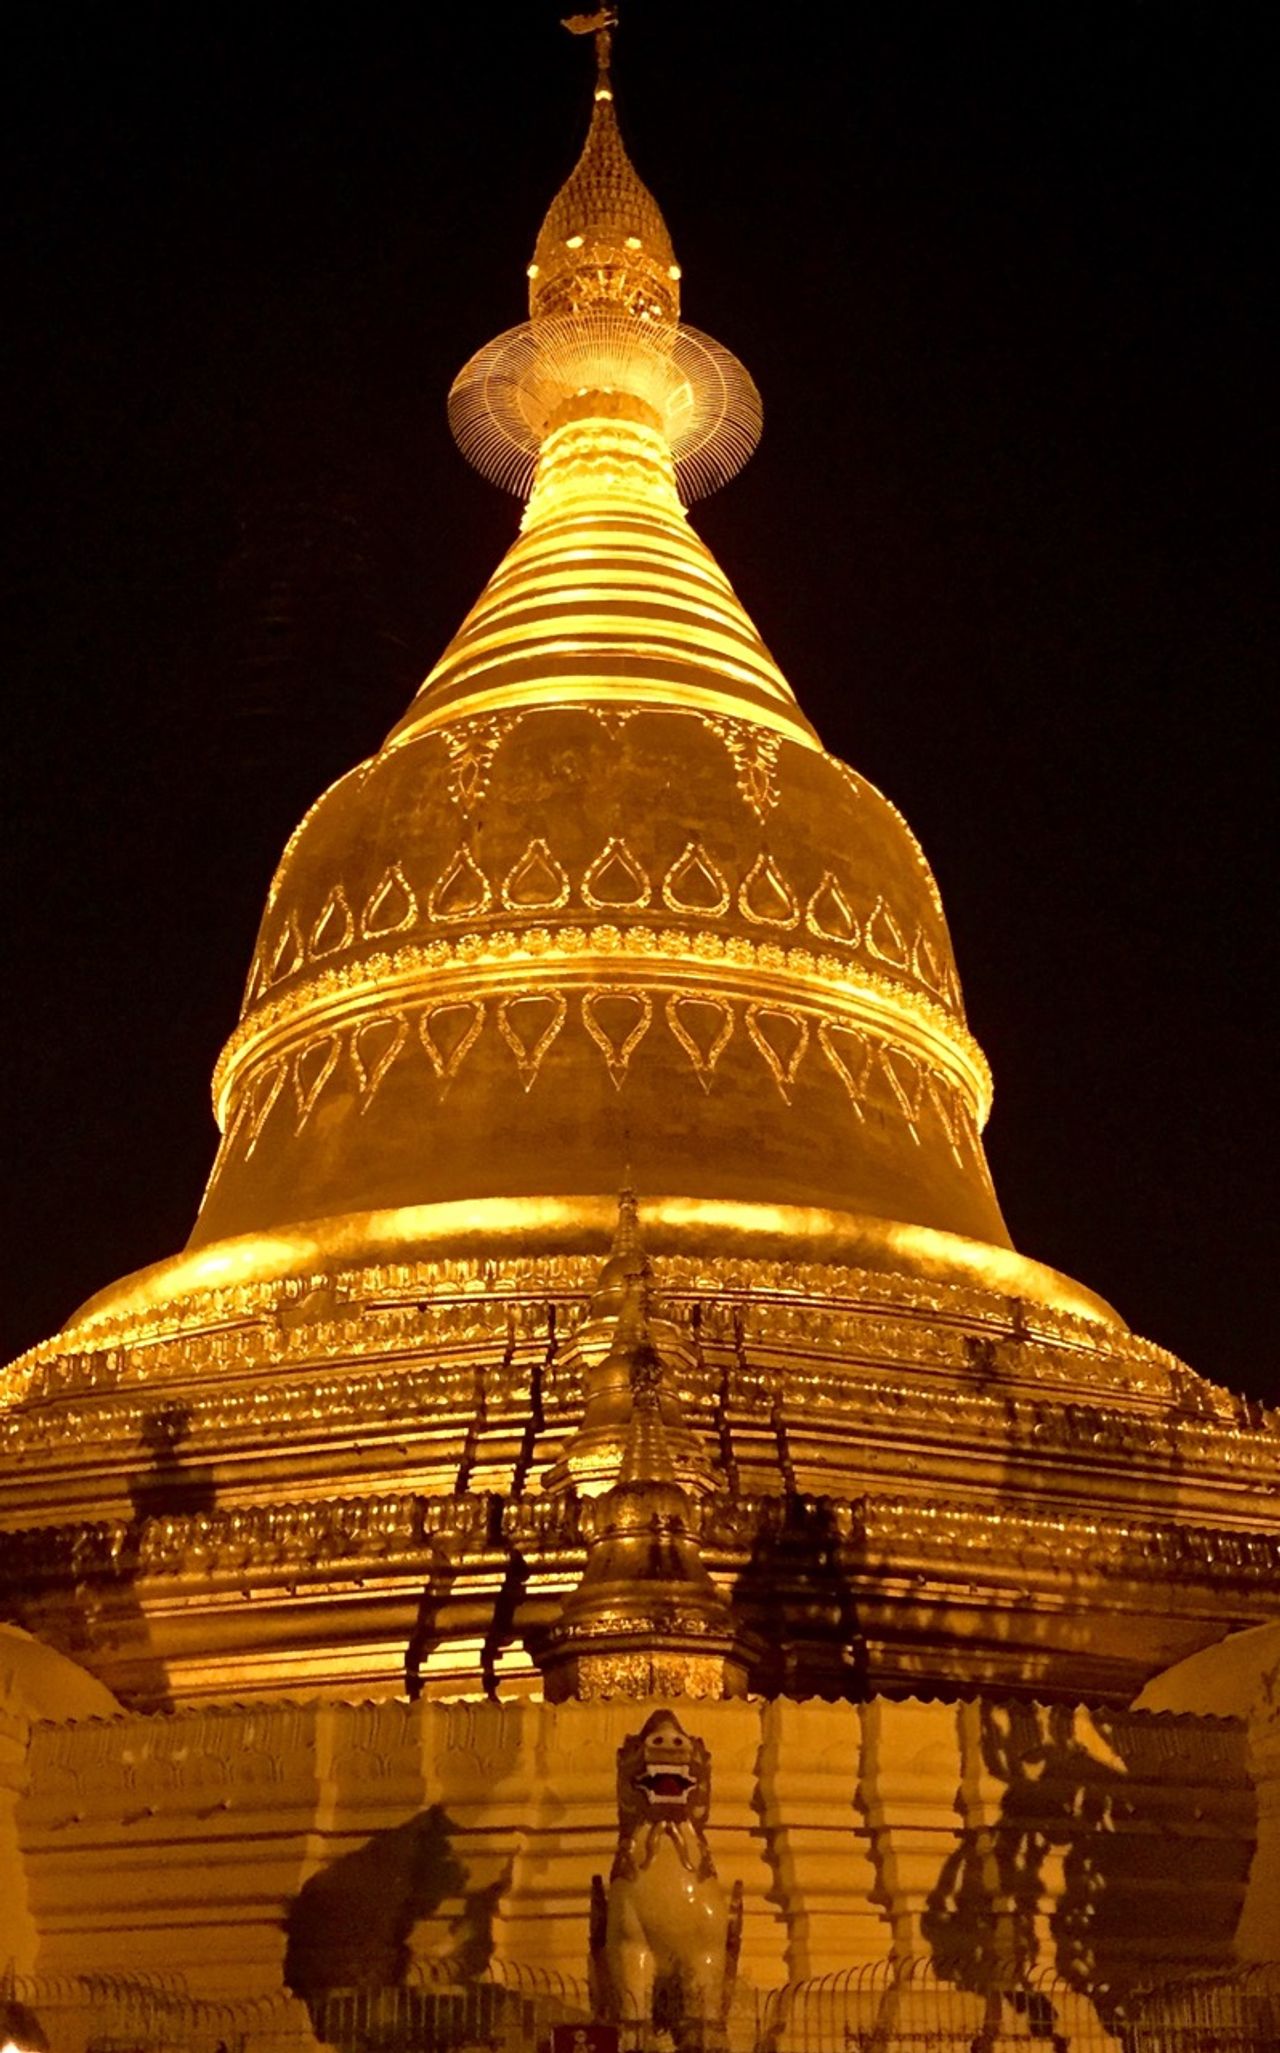 Maha Wizaya Pagoda lit up at night.